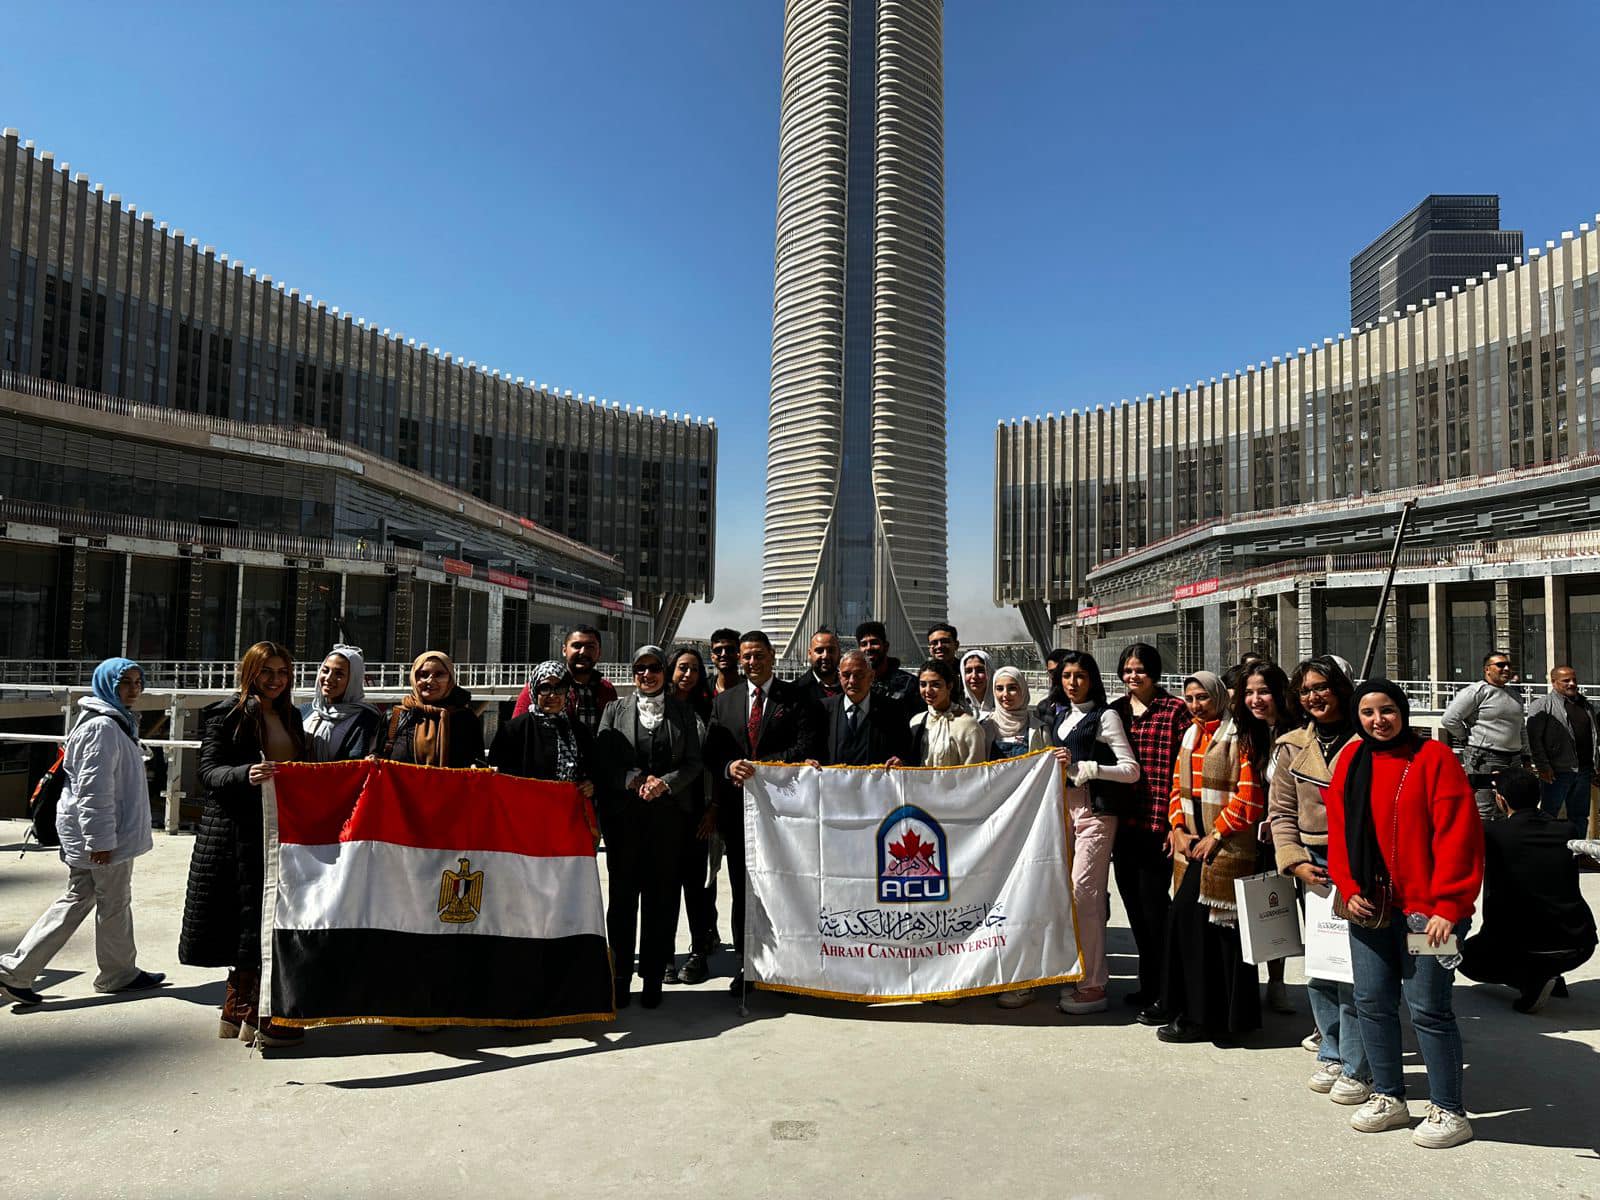 الأهرام الكندية تنظم "يوم في حب مصر" بالعاصمة الإدارية الجديدة